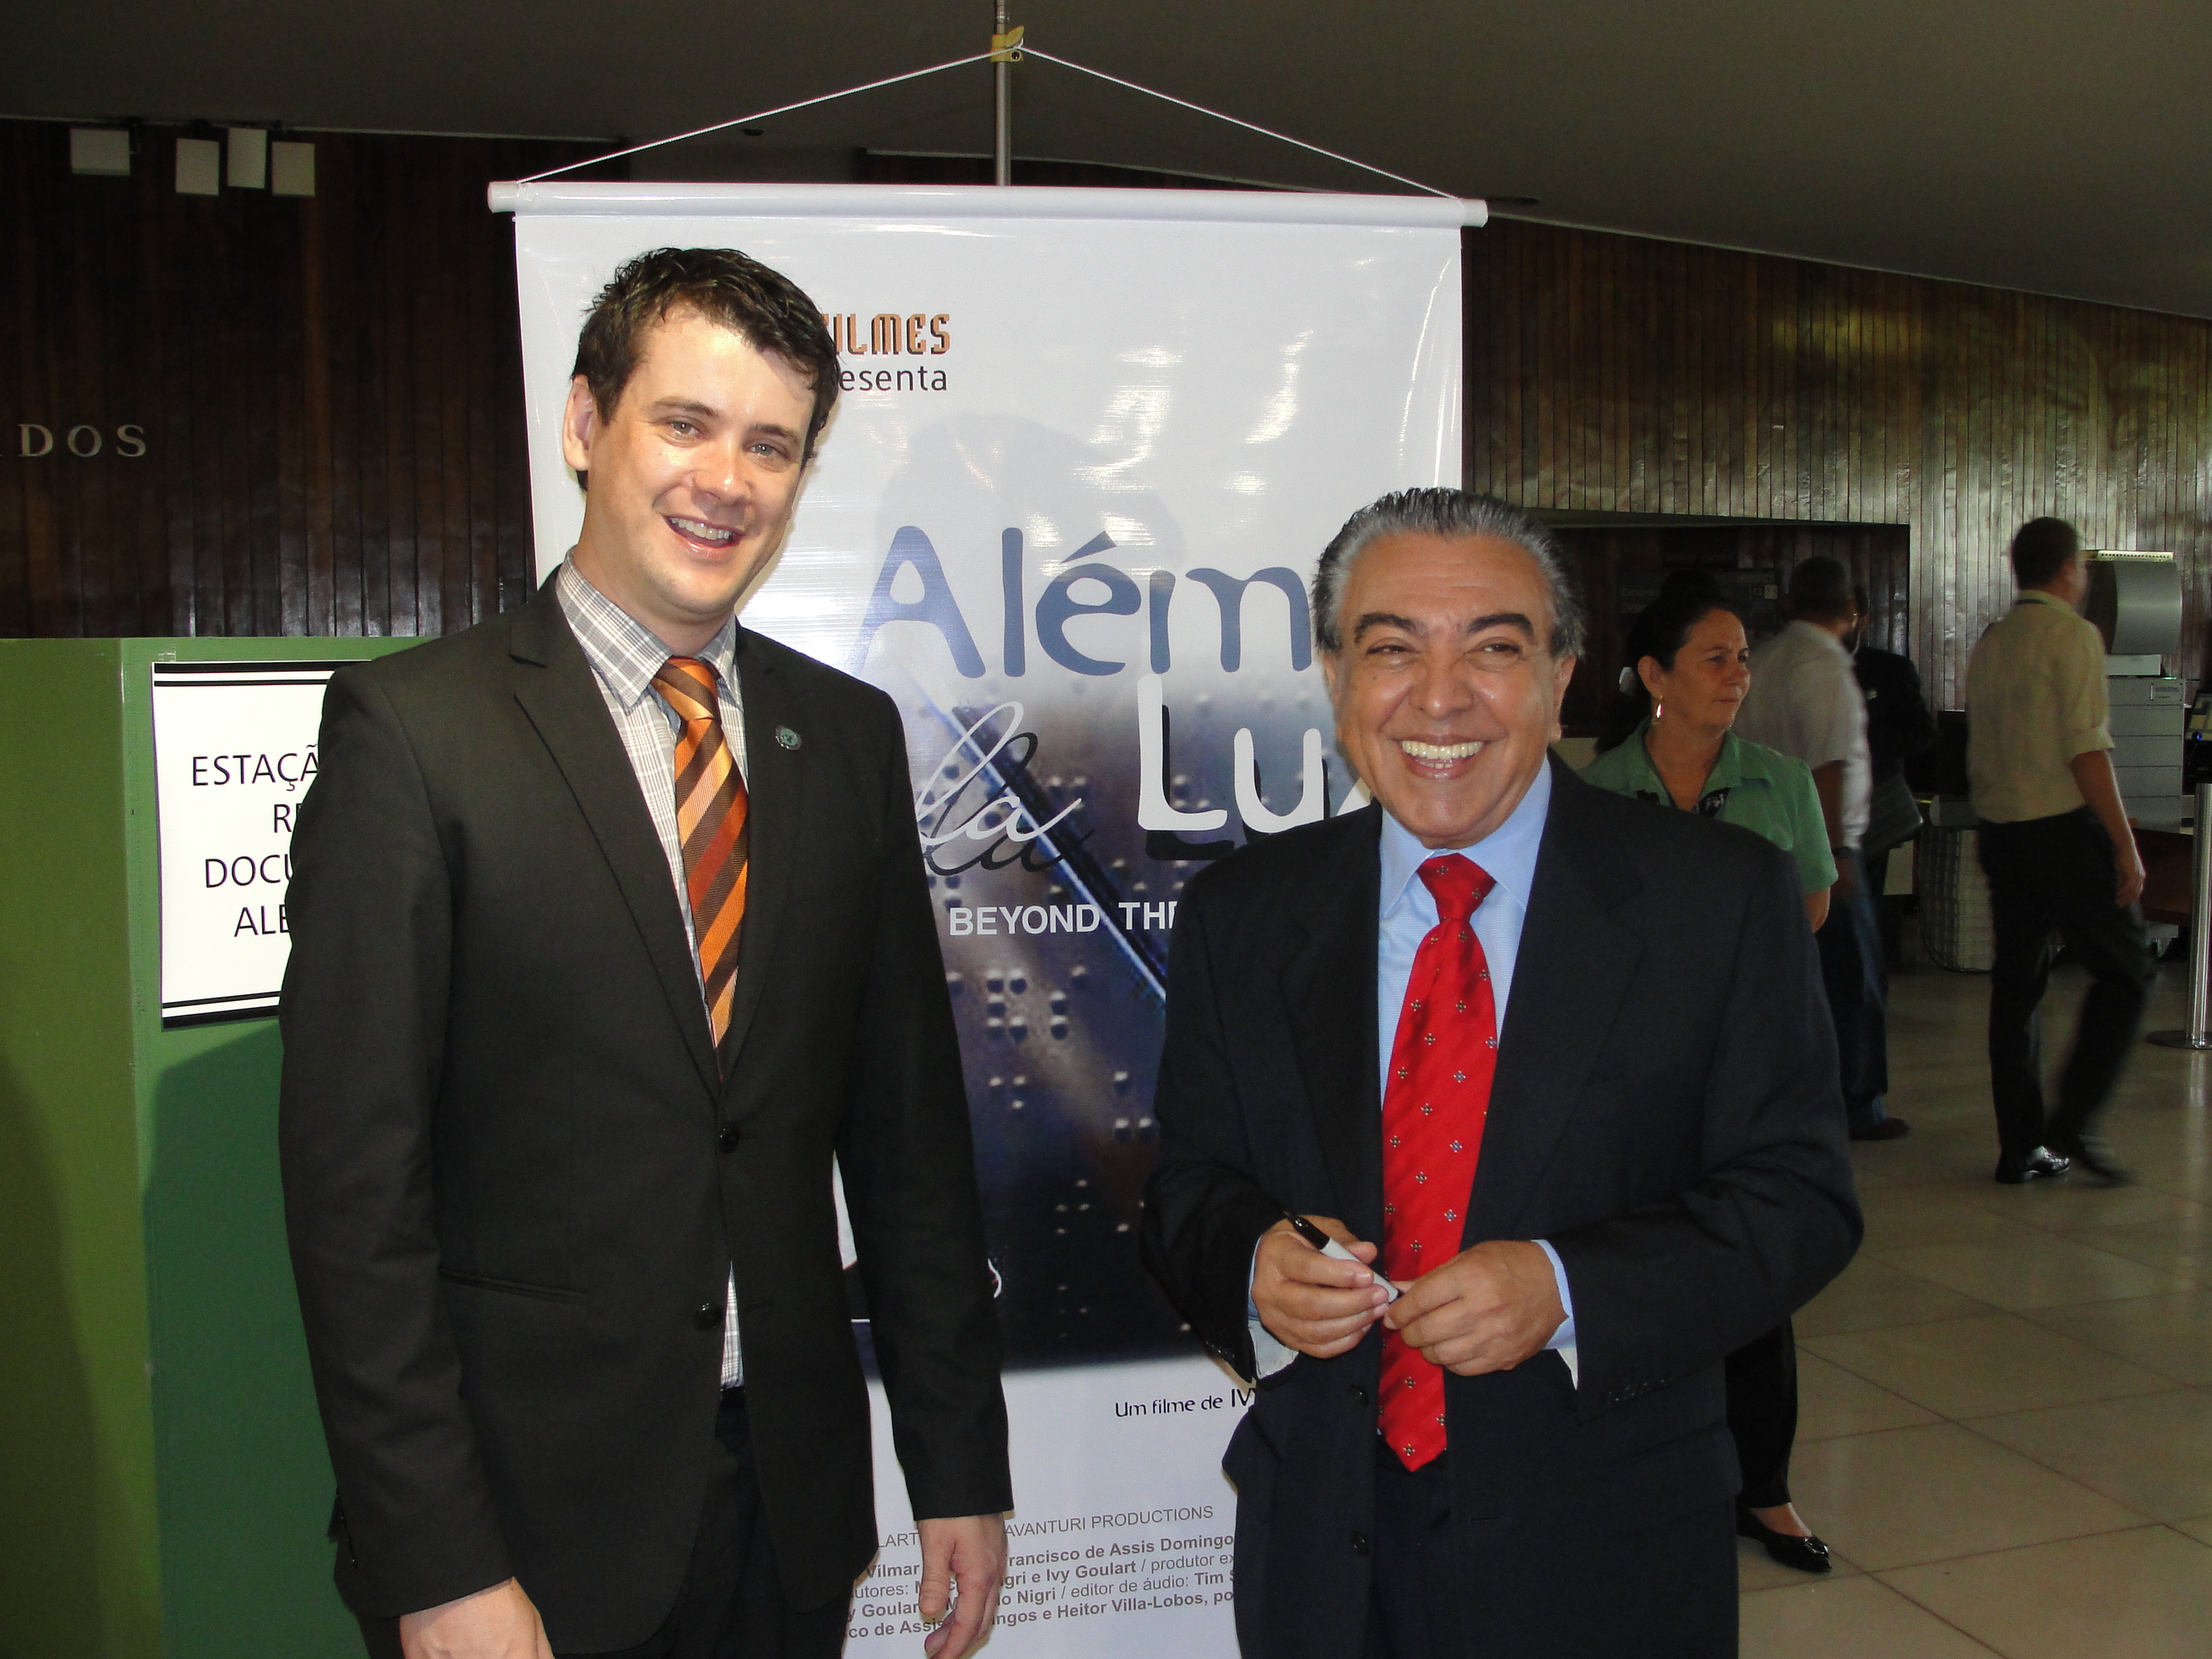 Yves Goulart and Maurício de Souza / Beyond the Light, Federal Senate of Brazil (Brasília)